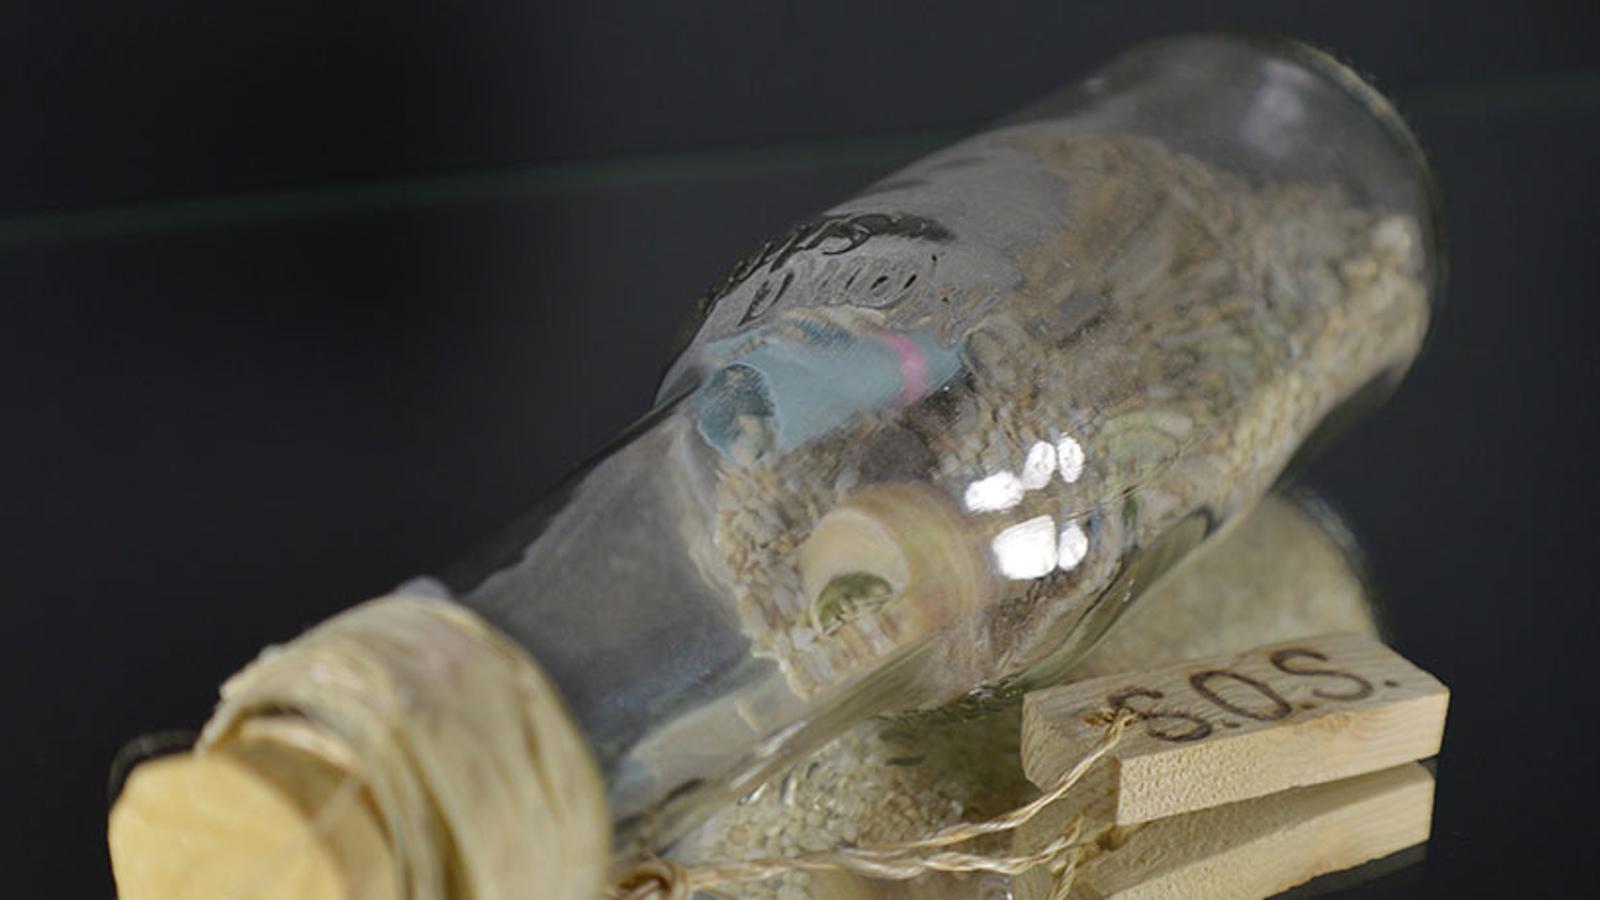 En glasflaska med en lapp i. På flaskan hänger det ett snöre som sitter fast i en liten träbit med texten "SOS".